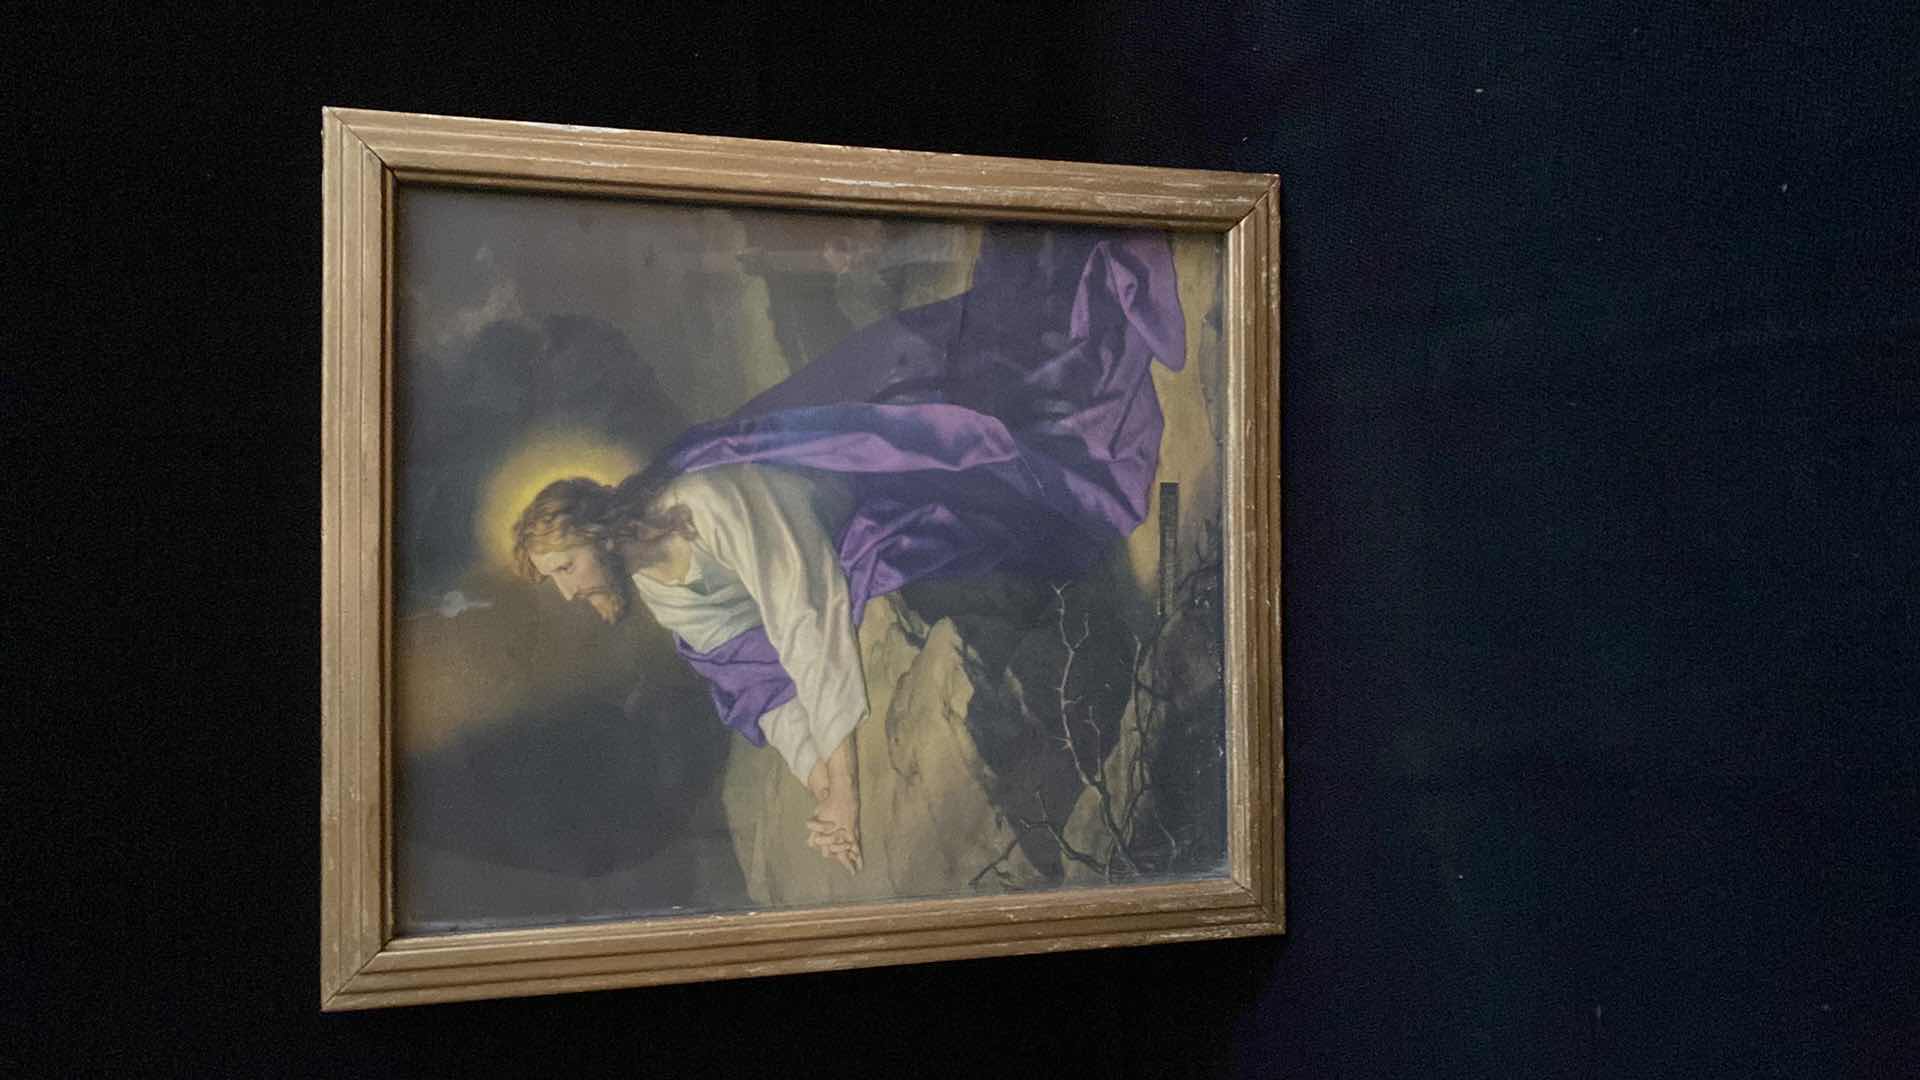 Photo 1 of GERFFERT COLLECTION- "CHRIST IN GETHSEMANE GARDEN" FRAMED PRIN
13.5 x 12